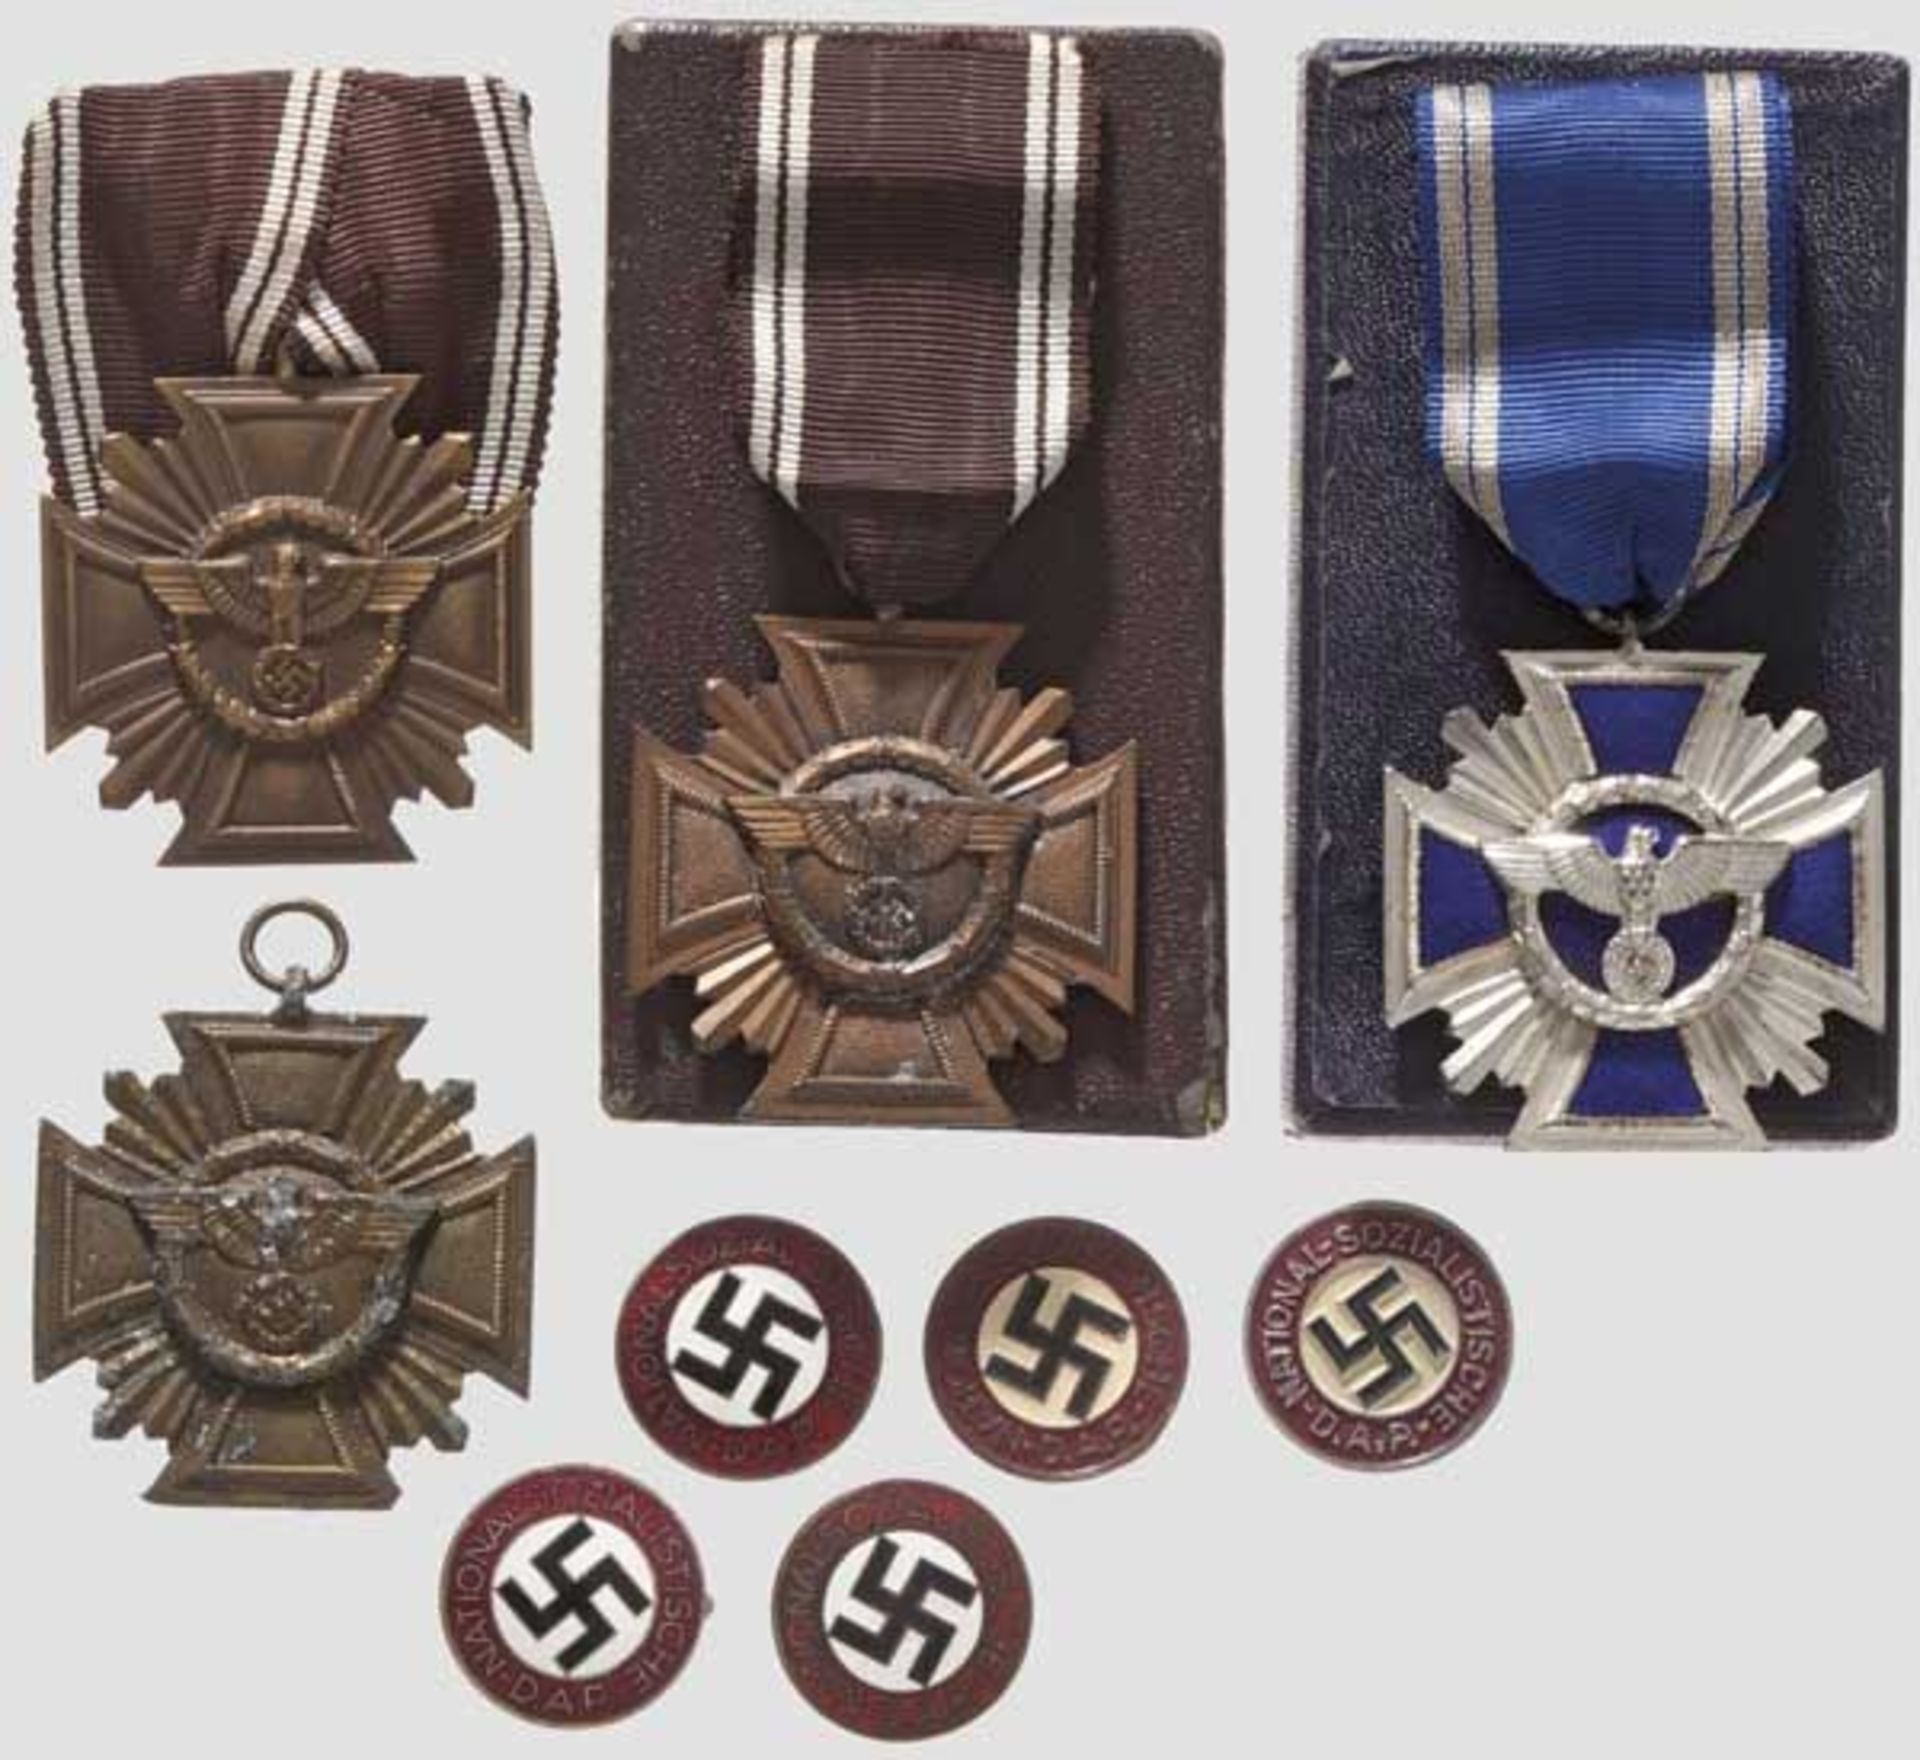 NSDAP Dienstauszeichnungen - vier Exemplare   Blau emailliertes Kreuz (dicke, qualitätvolle